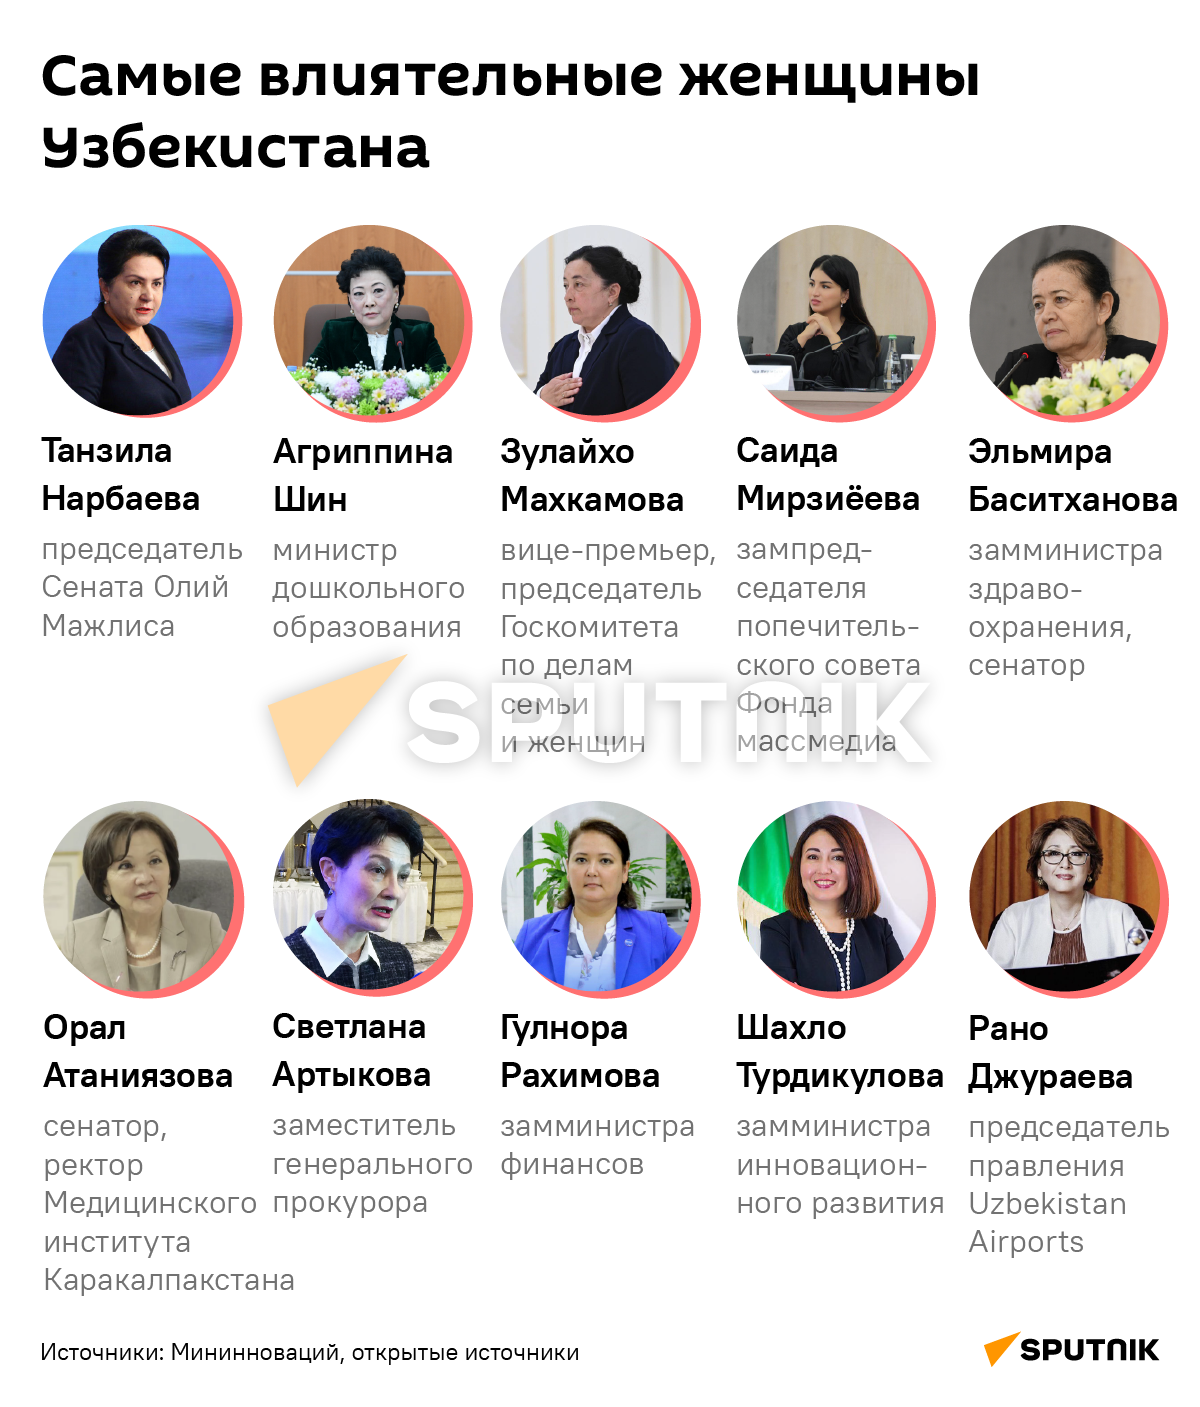 Самые влиятельные женщины Узбекистана деск - Sputnik Узбекистан